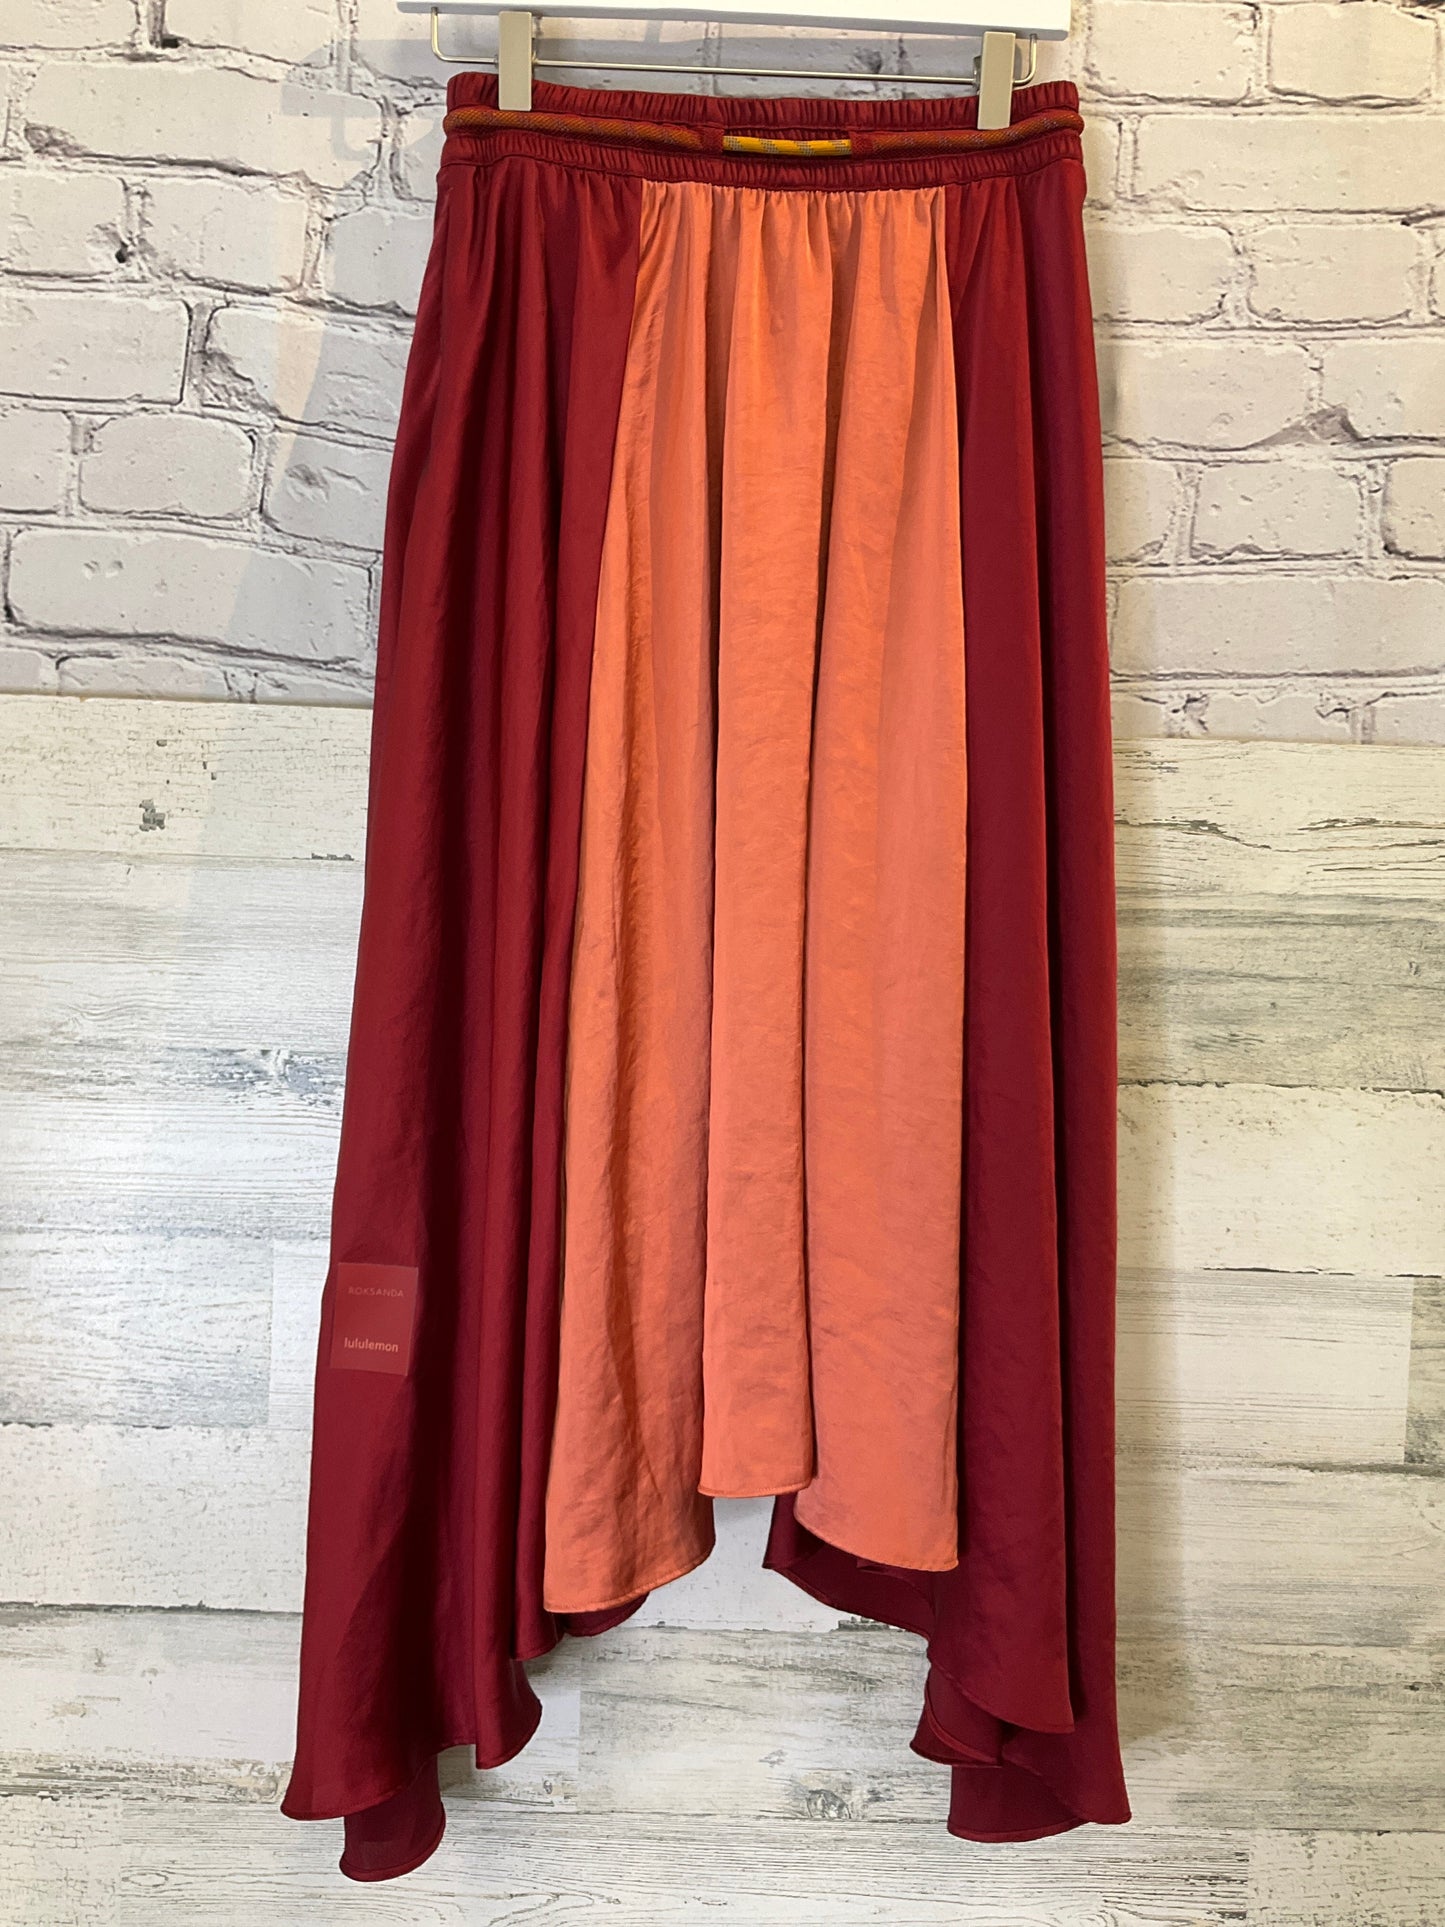 Red Skirt Midi Lululemon, Size S